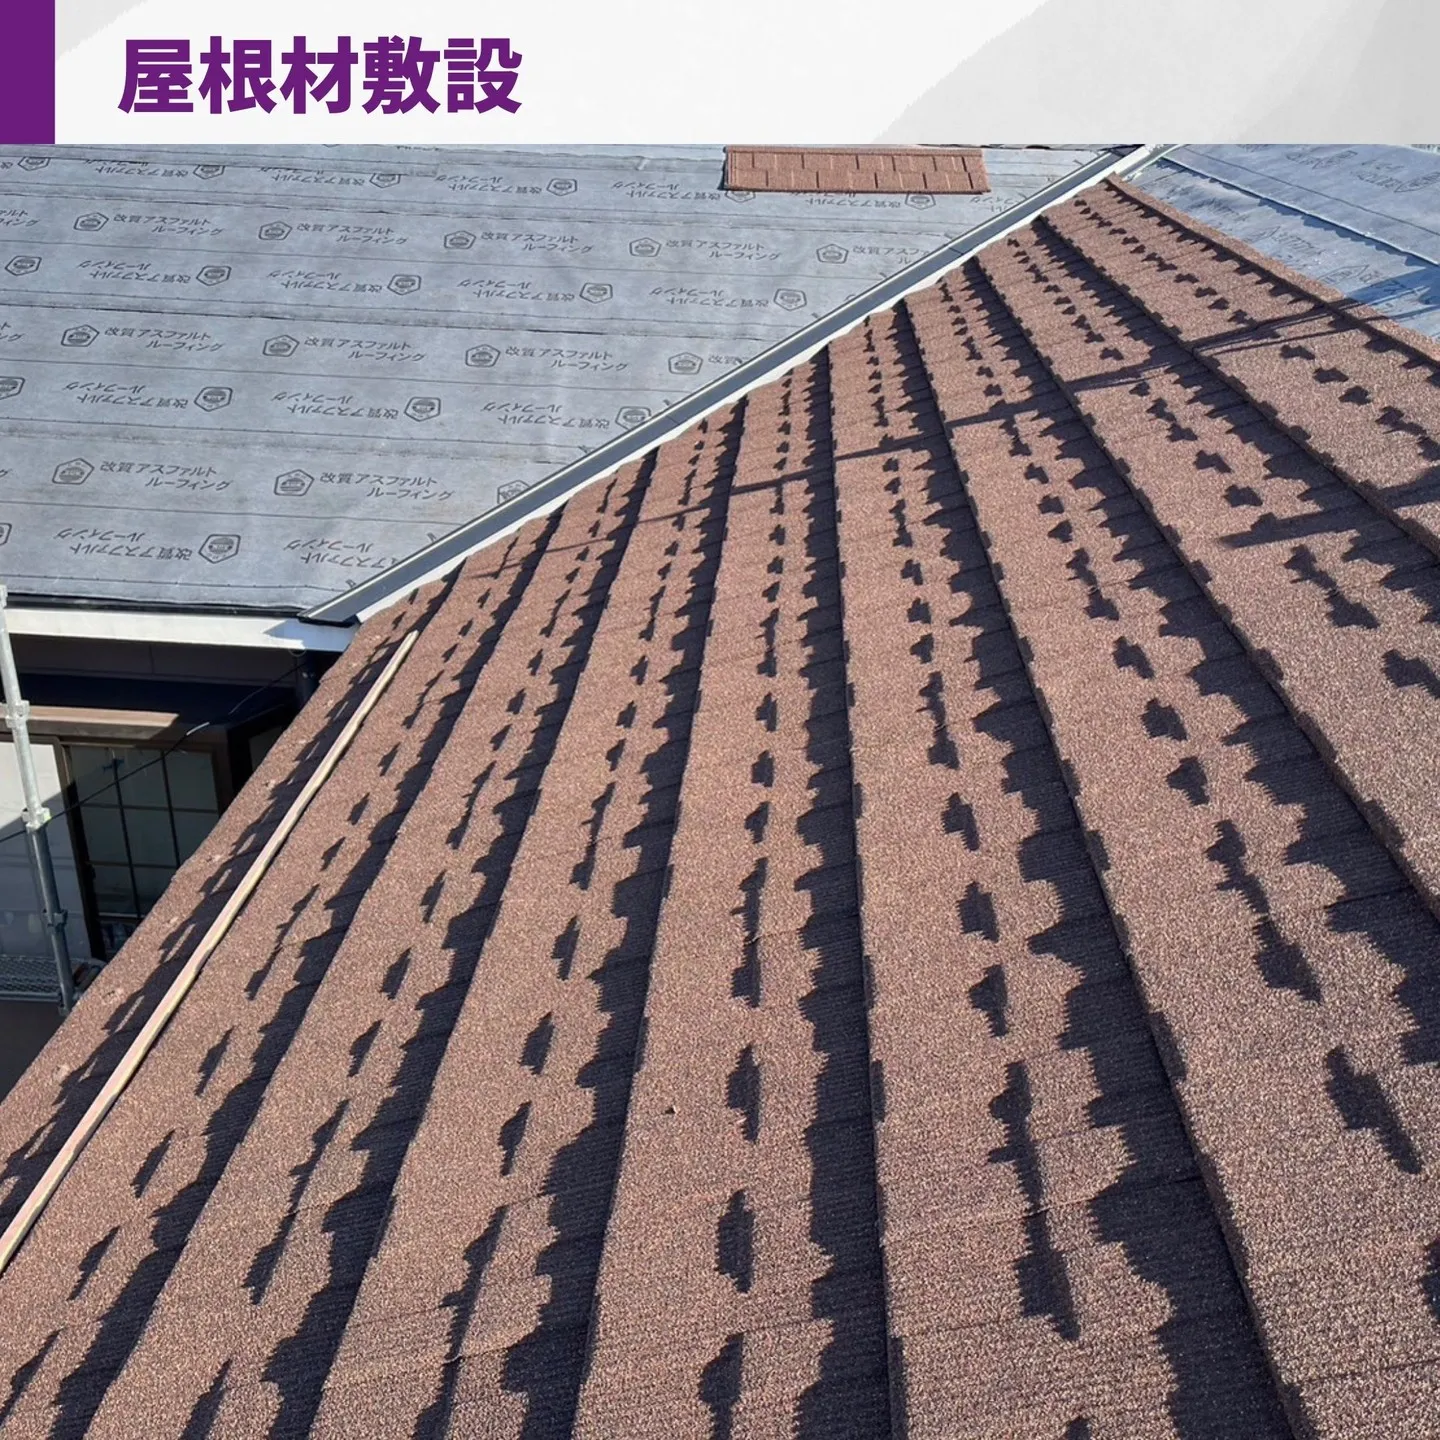 名古屋熱田区、屋根葺き替え工事の施工事例のご紹介です。